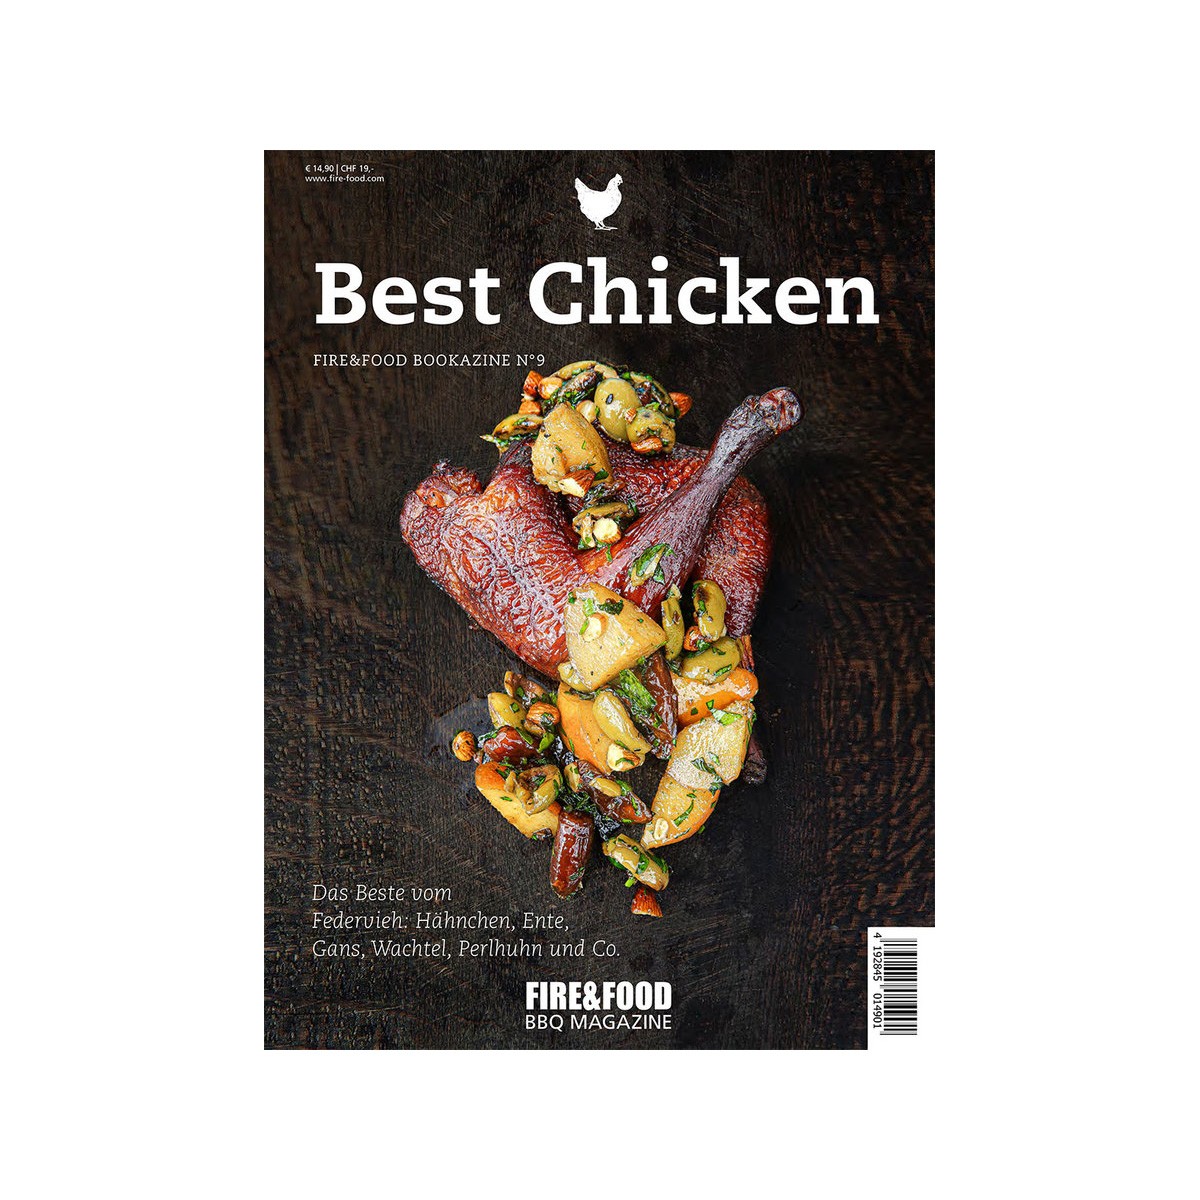 Best Chicken – Fire&Food Bookazine – Grillen auf der Plancha – 120 …